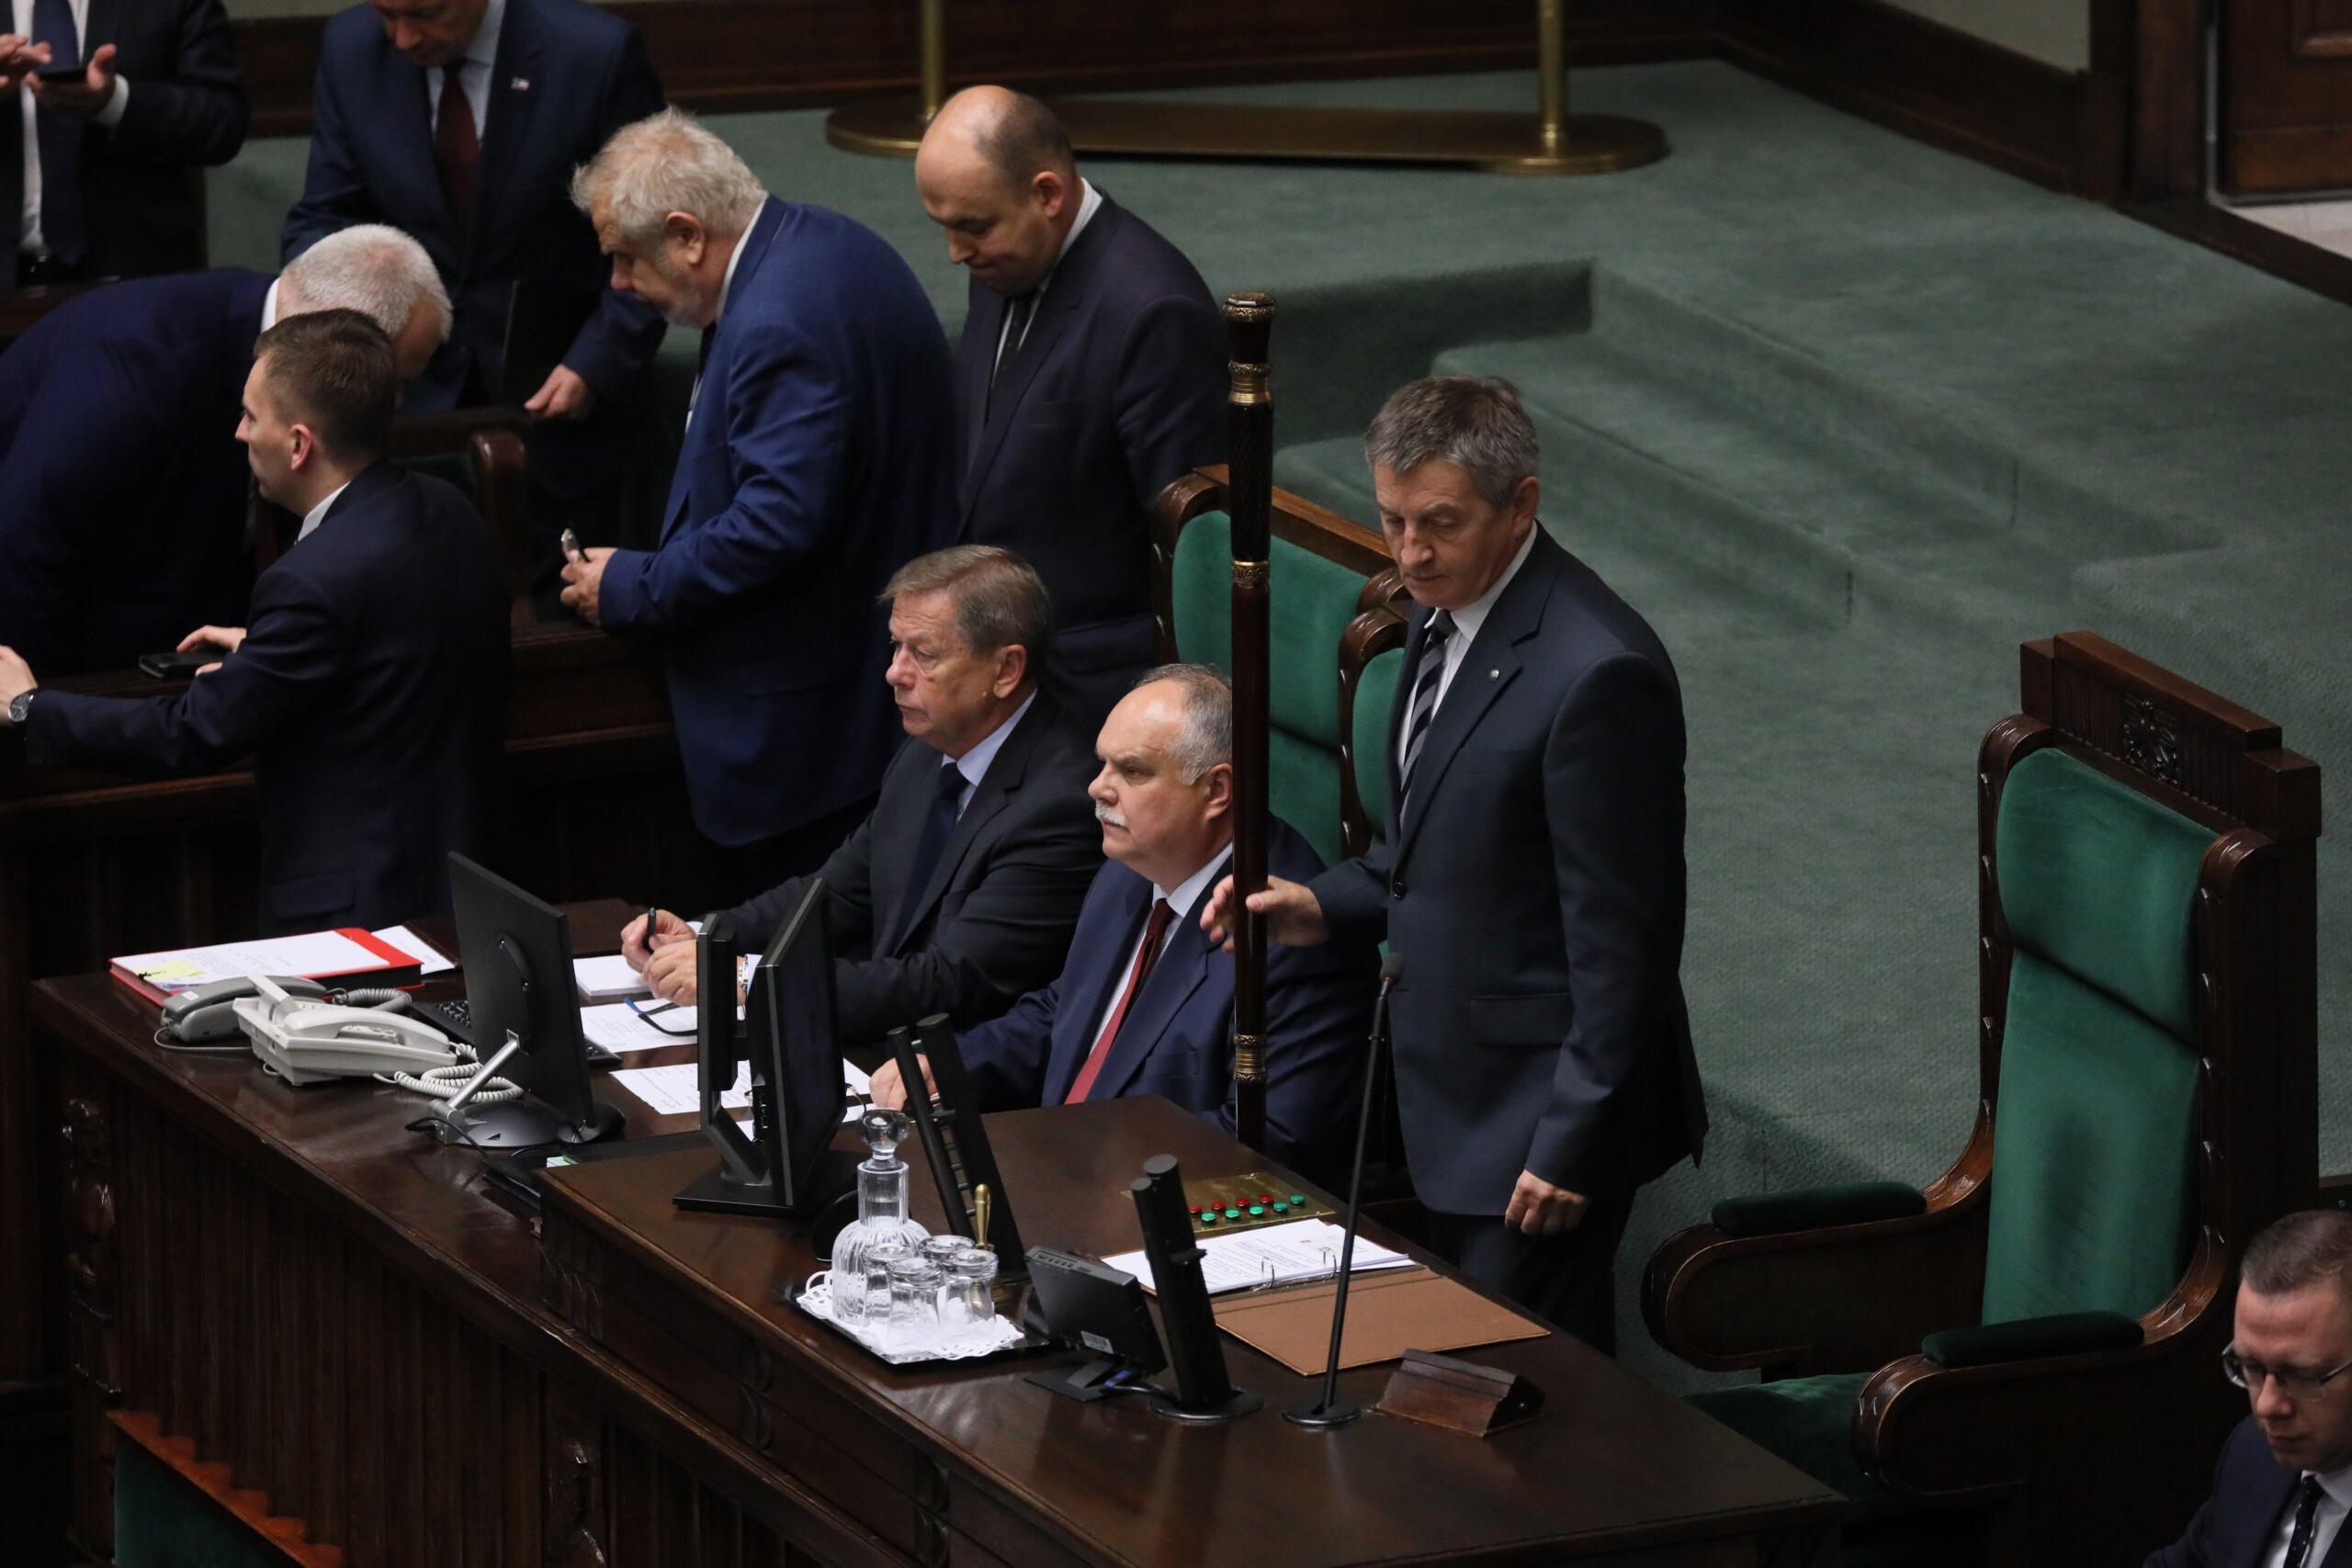 Poseł PiS Marek Kuchciński stoi w miejscu przeznaczonym dla marszałka Sejmu, obok niego laska marszałkowska